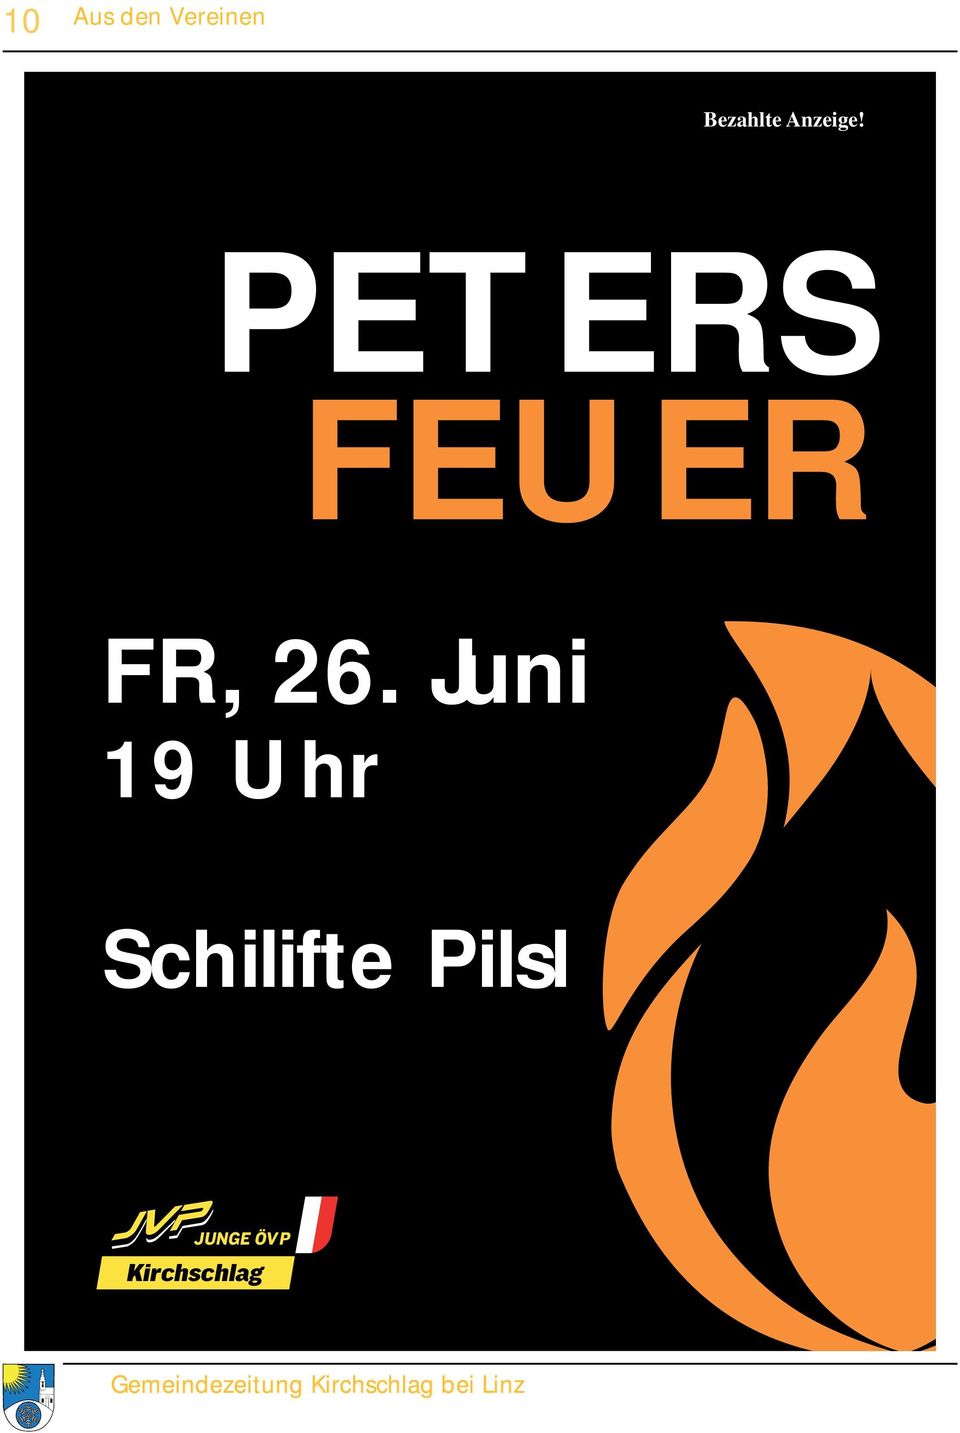 PETERS FEUER FR, 26.